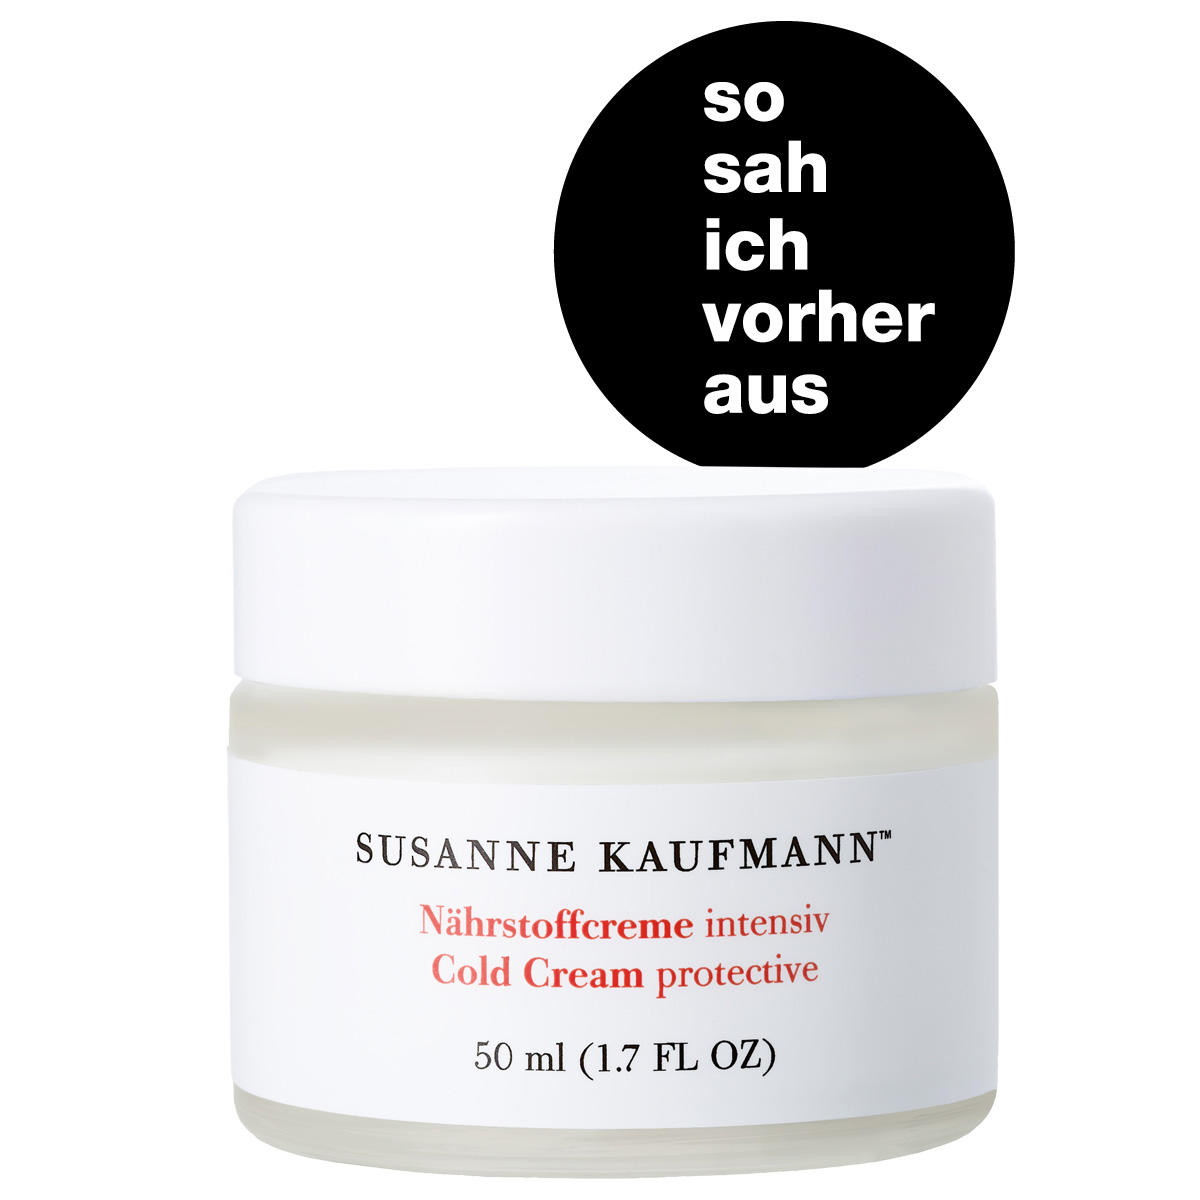 Susanne Kaufmann Nutrient cream intensive 50 ml - 5